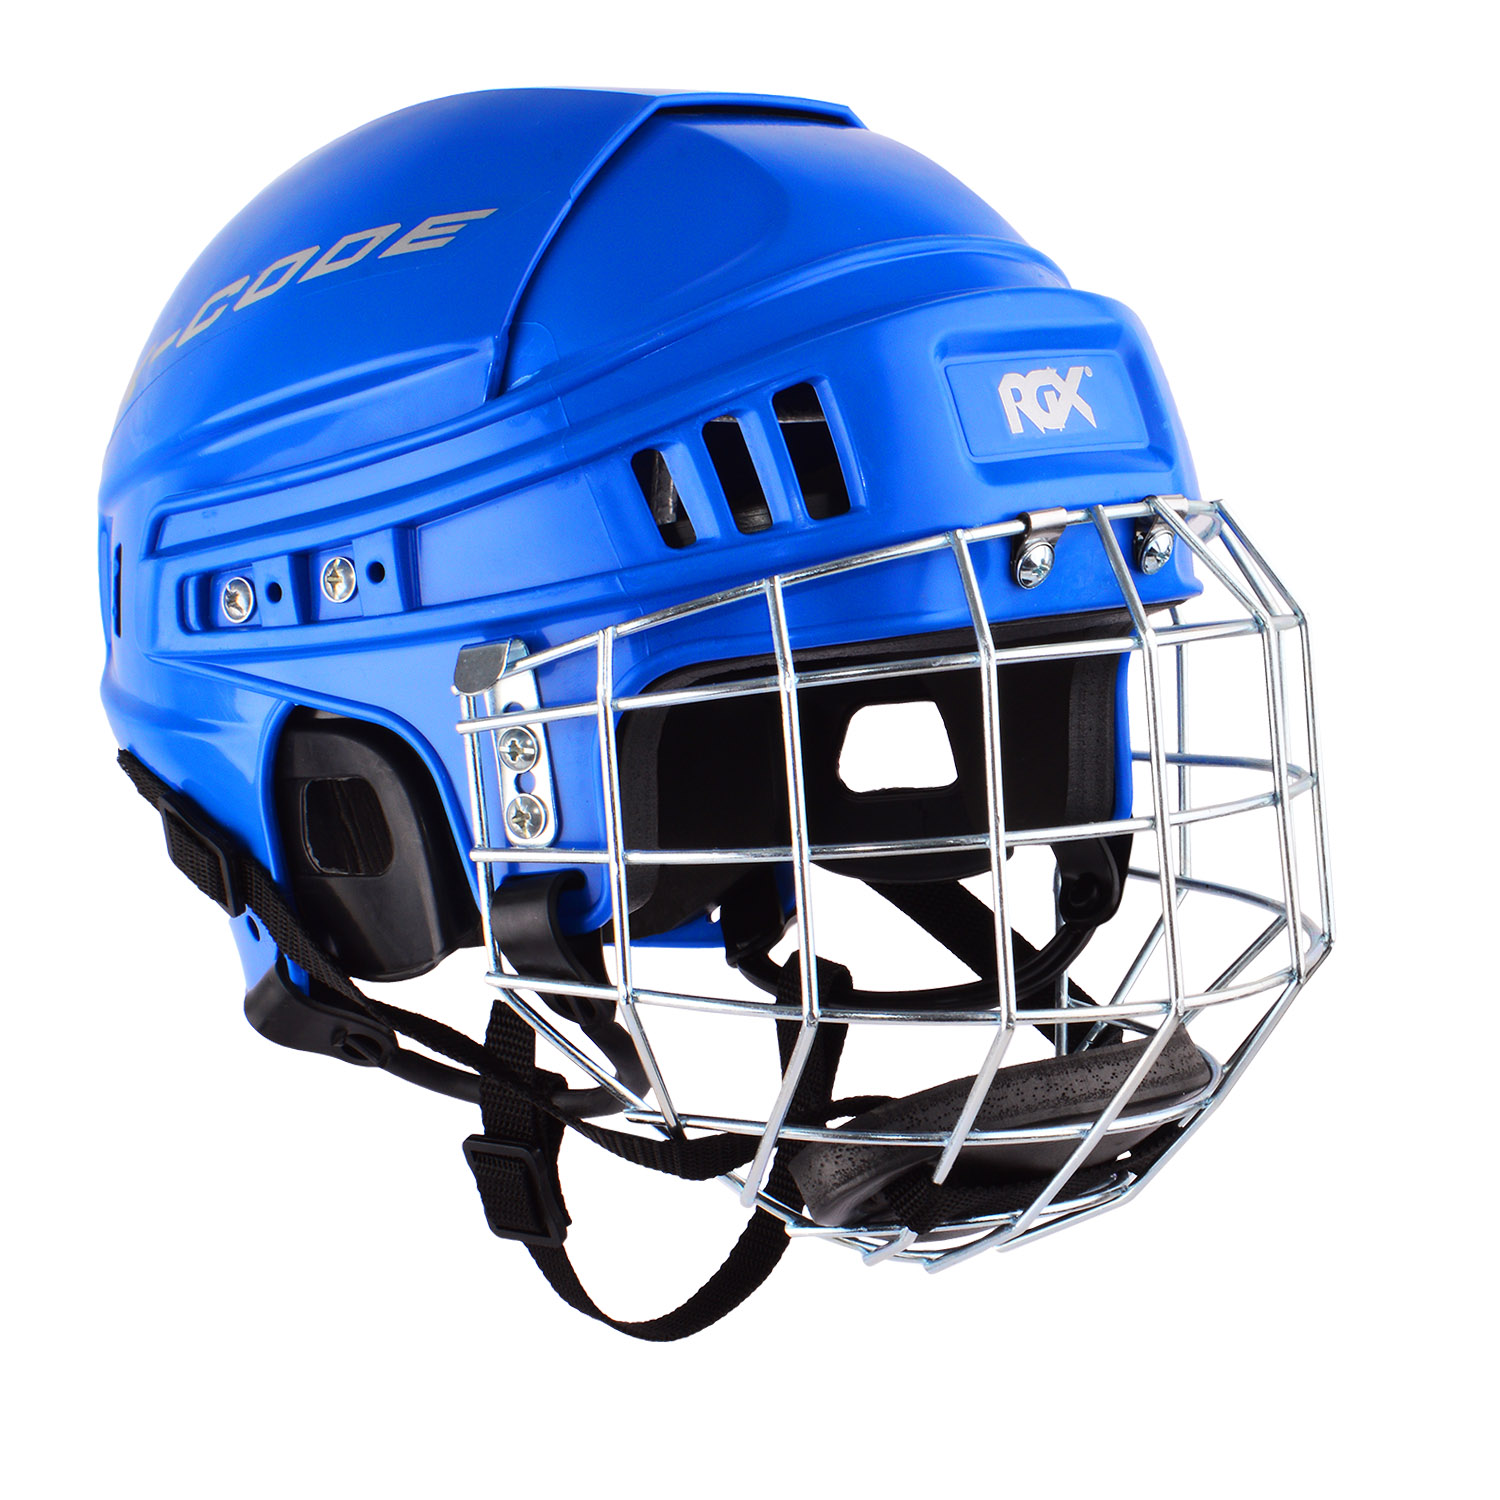 Хоккейный визор или хоккейная маска. Что лучше?